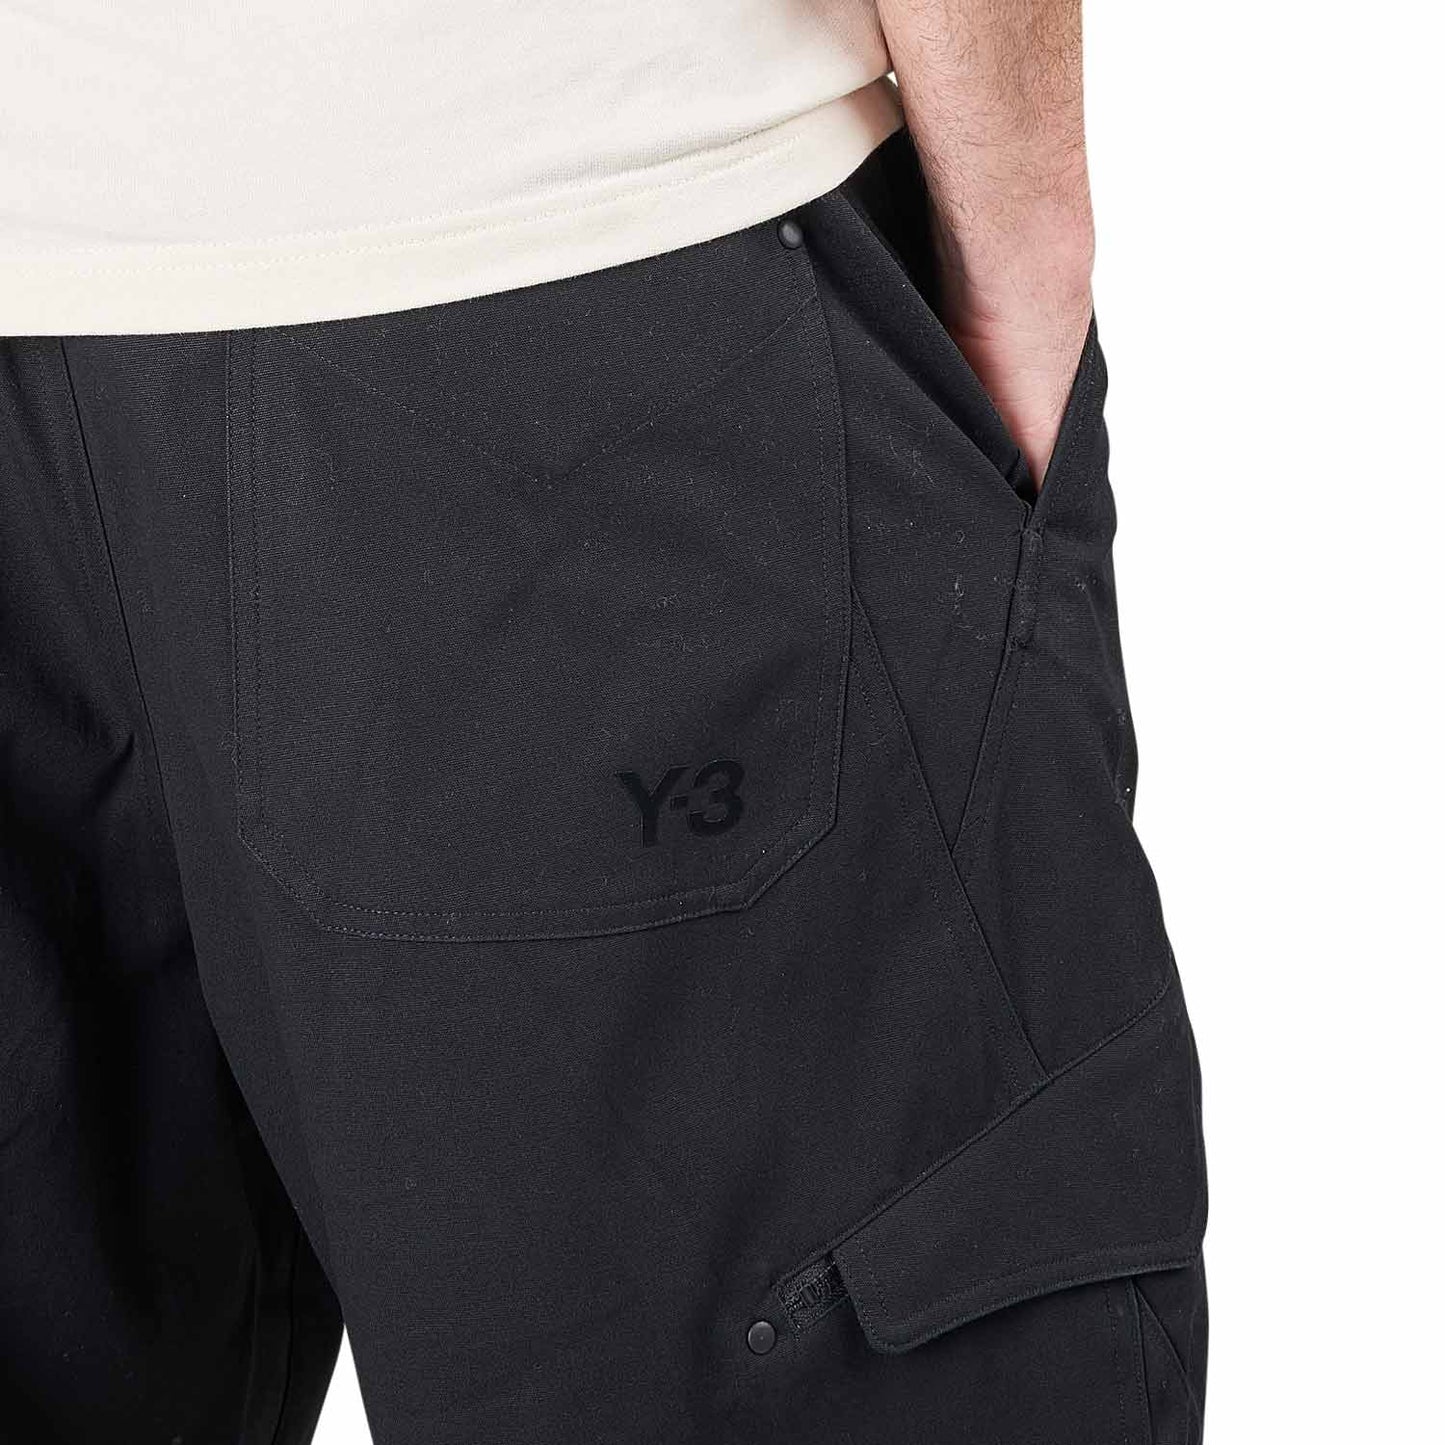 Y-3 Workwear Pants (Schwarz)  - Allike Store